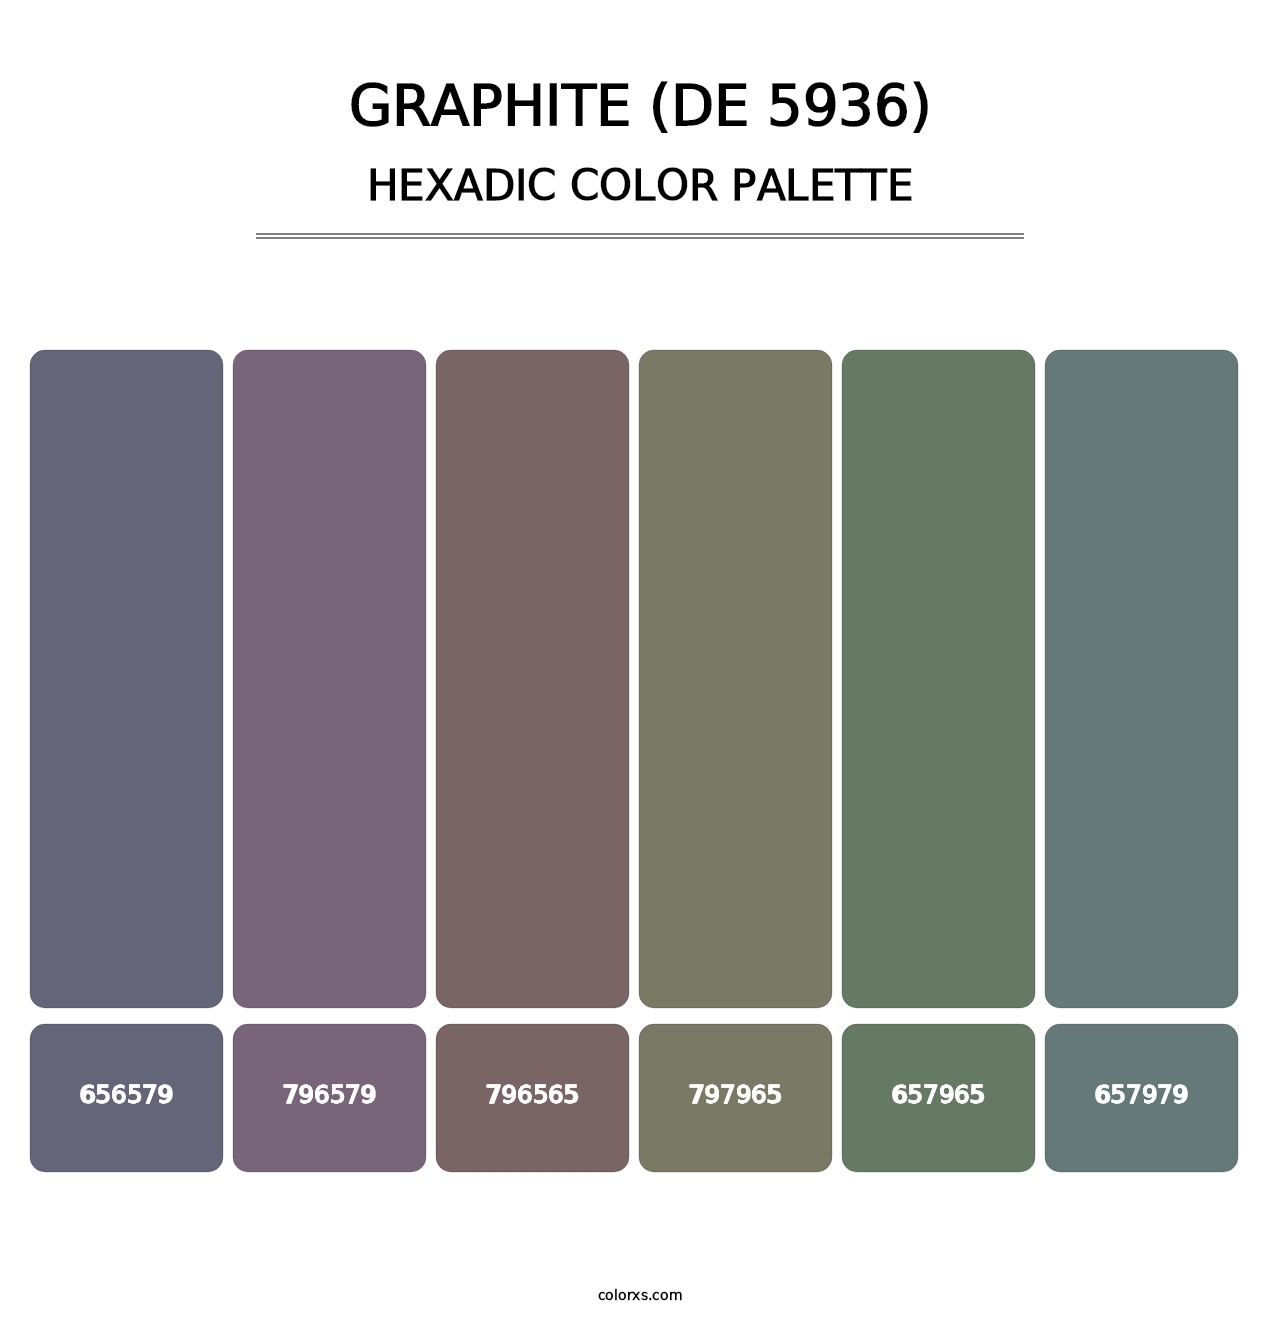 Graphite (DE 5936) - Hexadic Color Palette